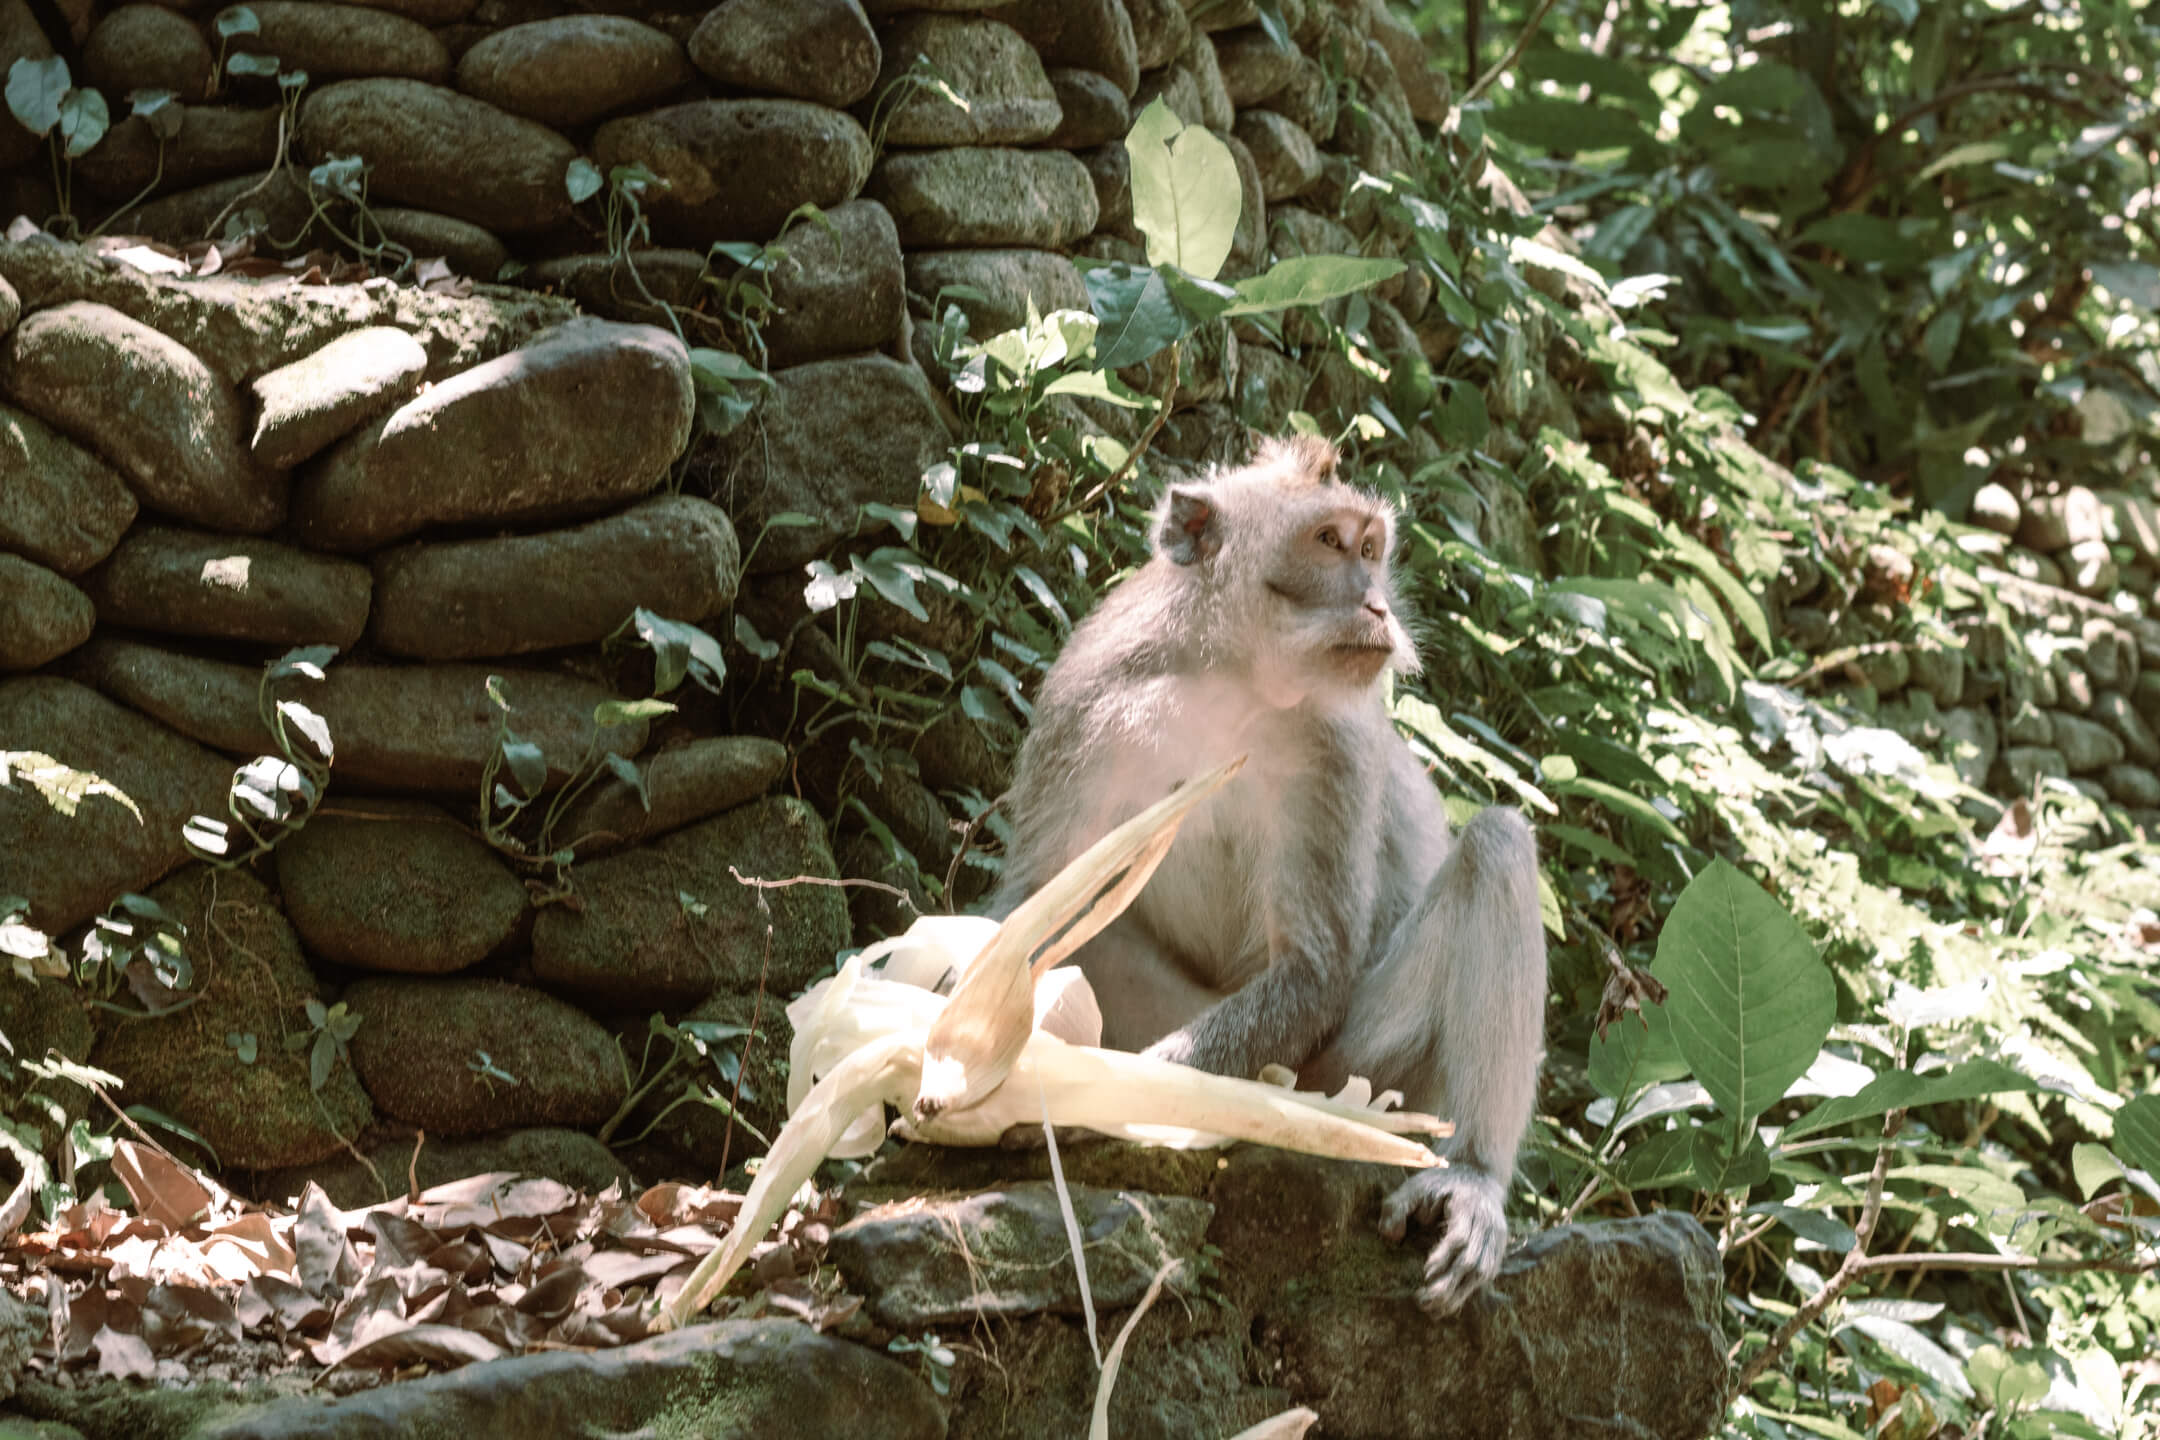 The Sacred Monkey Forest Sanctuary in Ubud